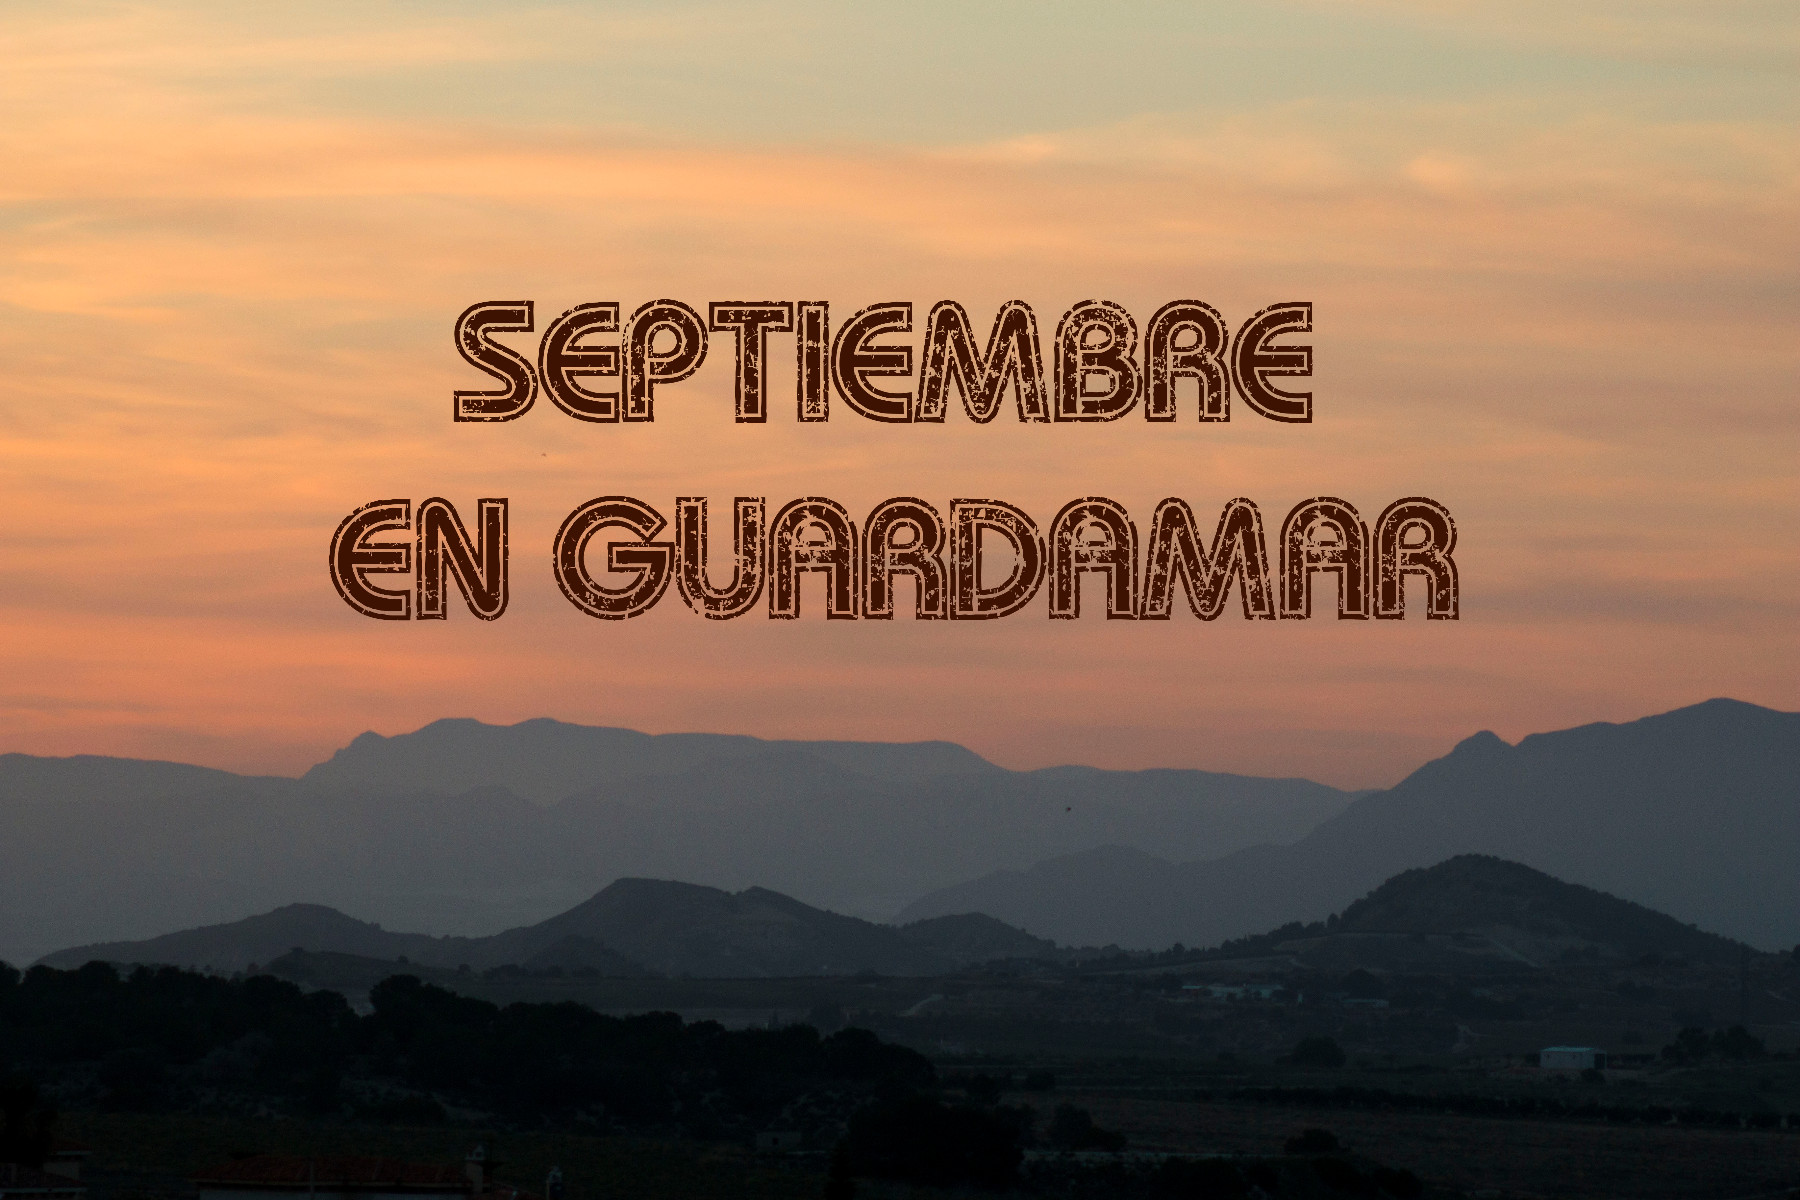 Enjoy local activities in Guardamar, Costa Blanca in September